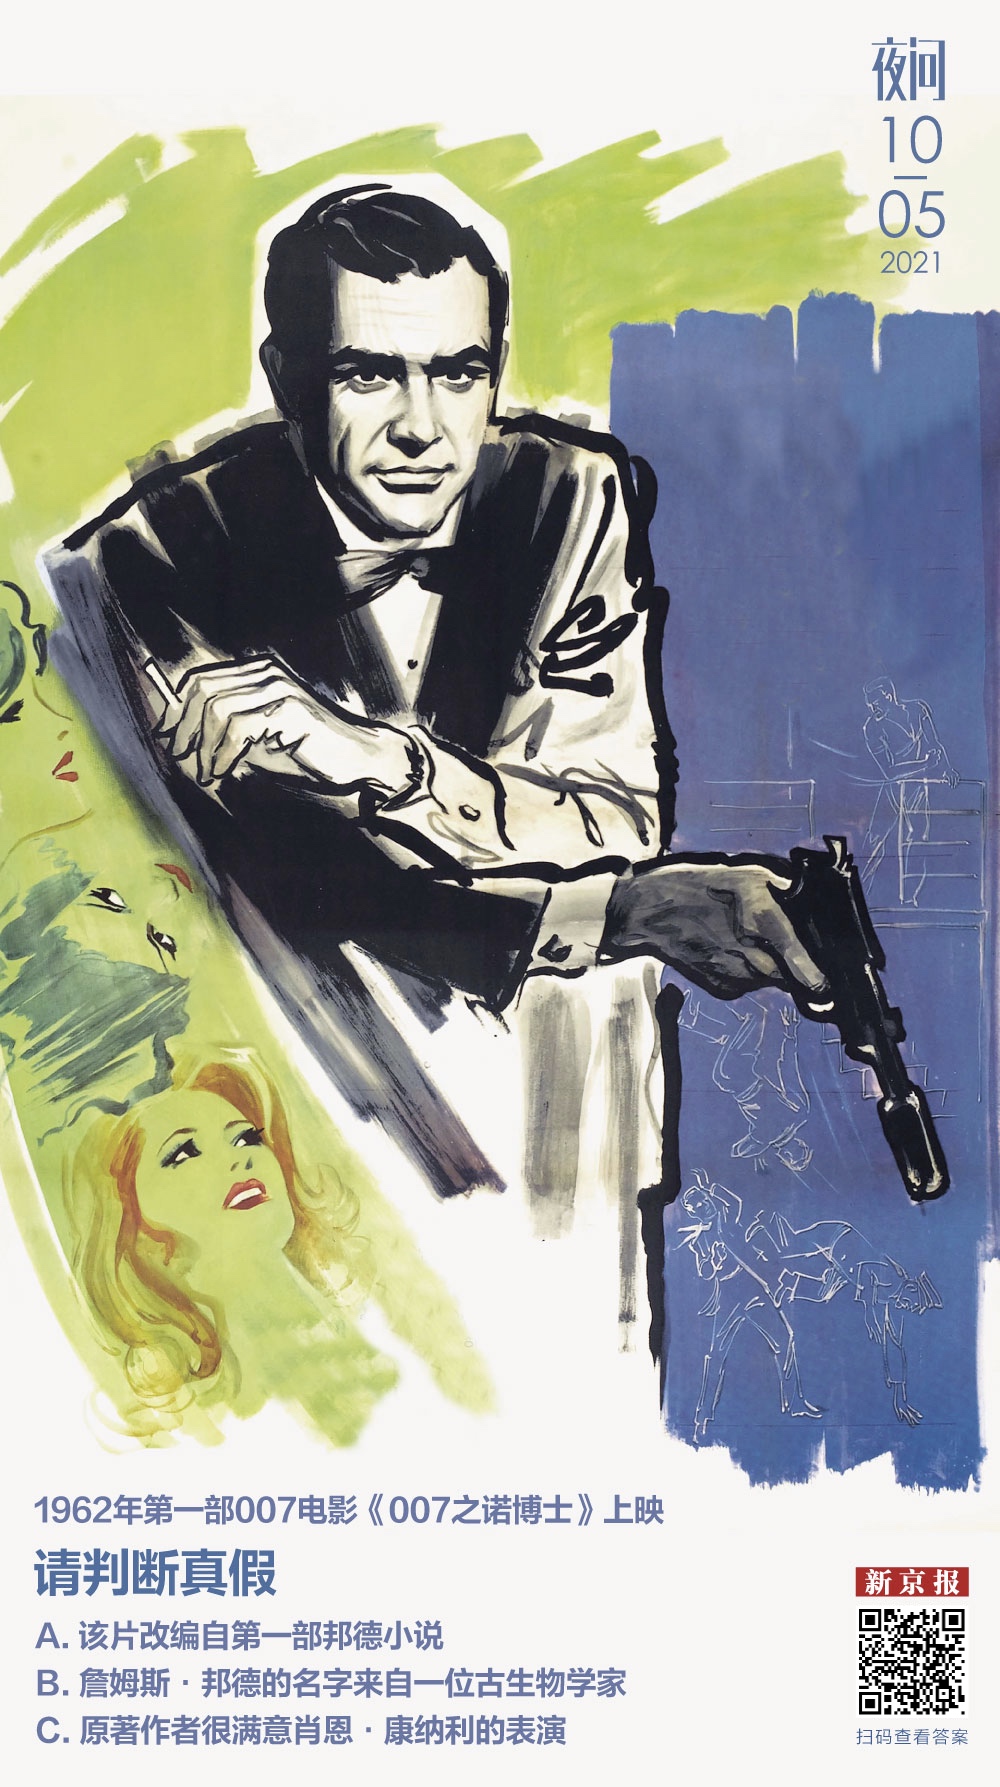 007系列电影顺序 007电影全集排序